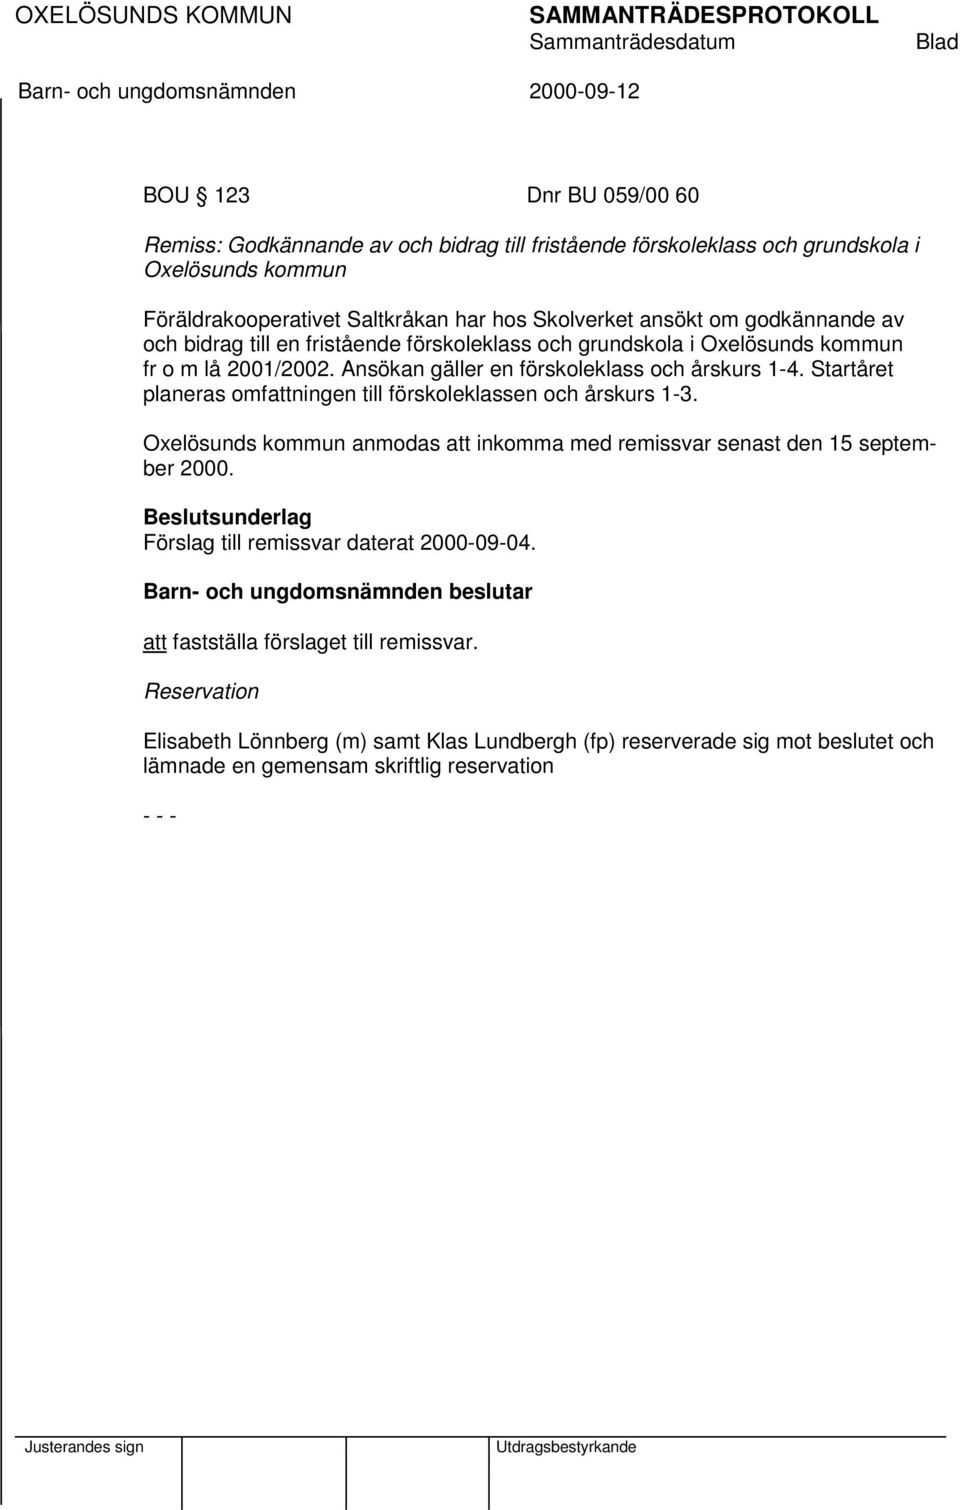 Startåret planeras omfattningen till förskoleklassen och årskurs 1-3. Oxelösunds kommun anmodas att inkomma med remissvar senast den 15 september 2000.